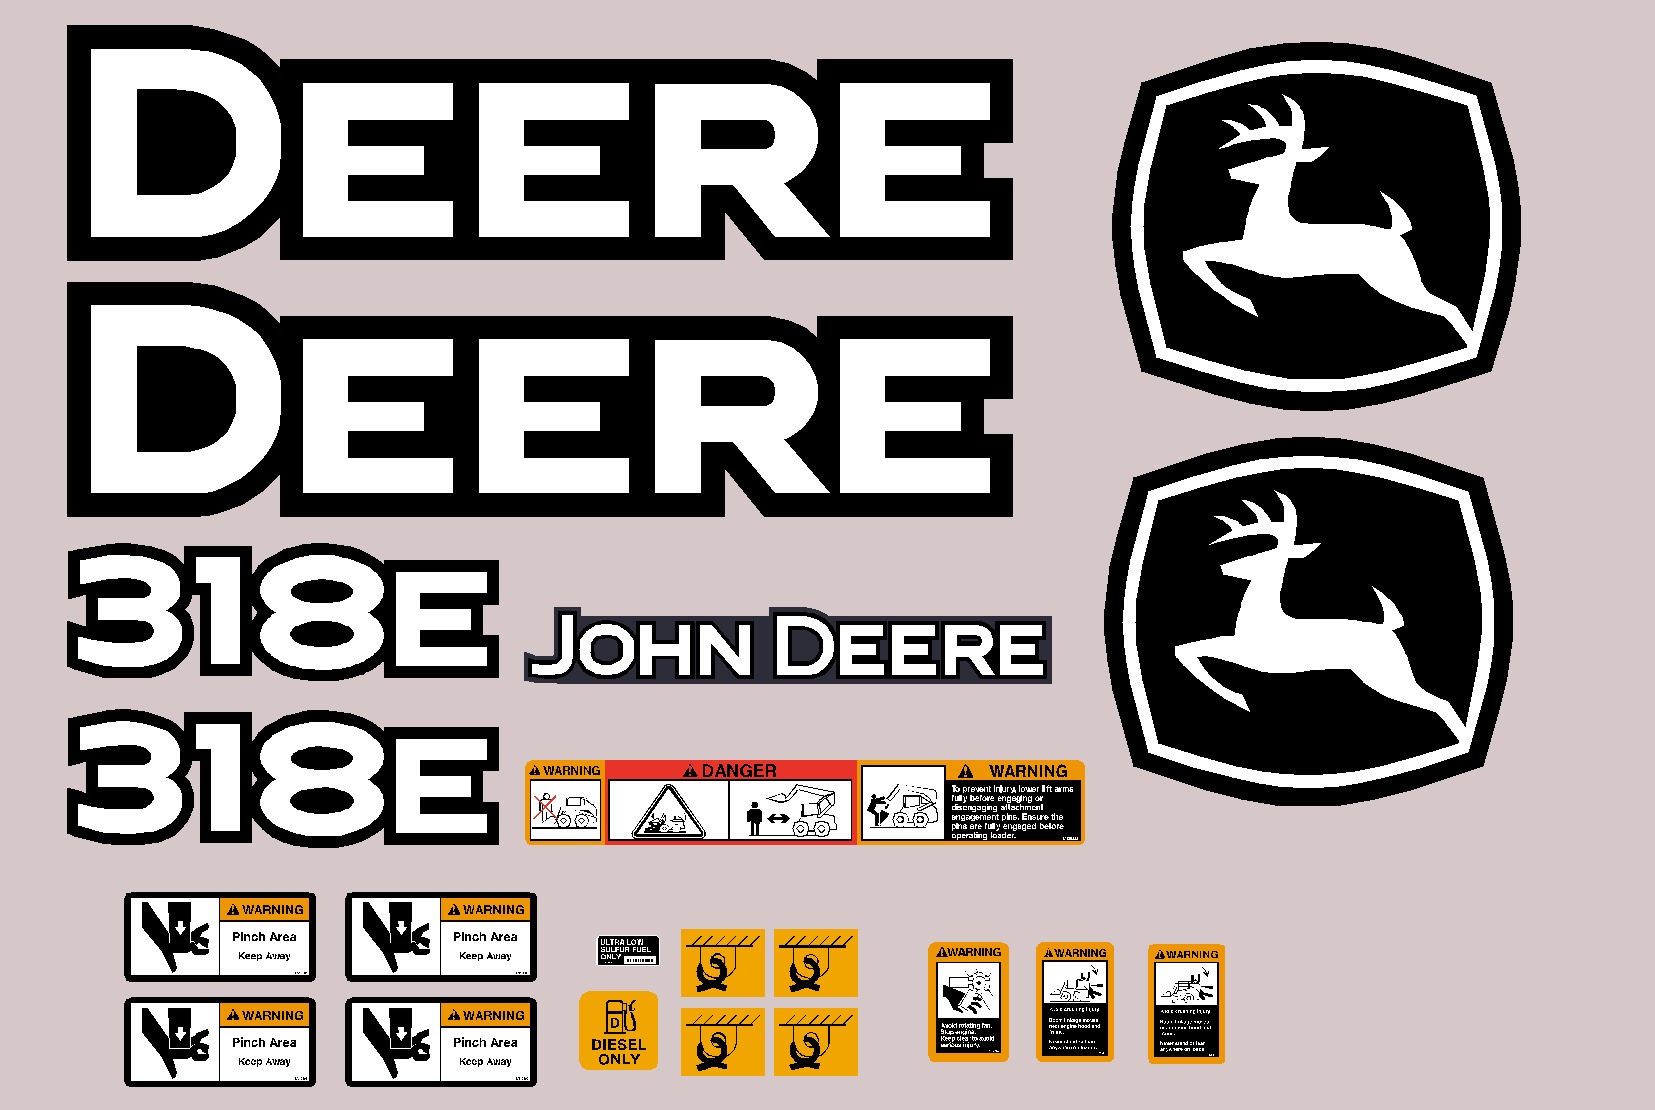 Deere Skid Steer Loaders 318E Decal Packages